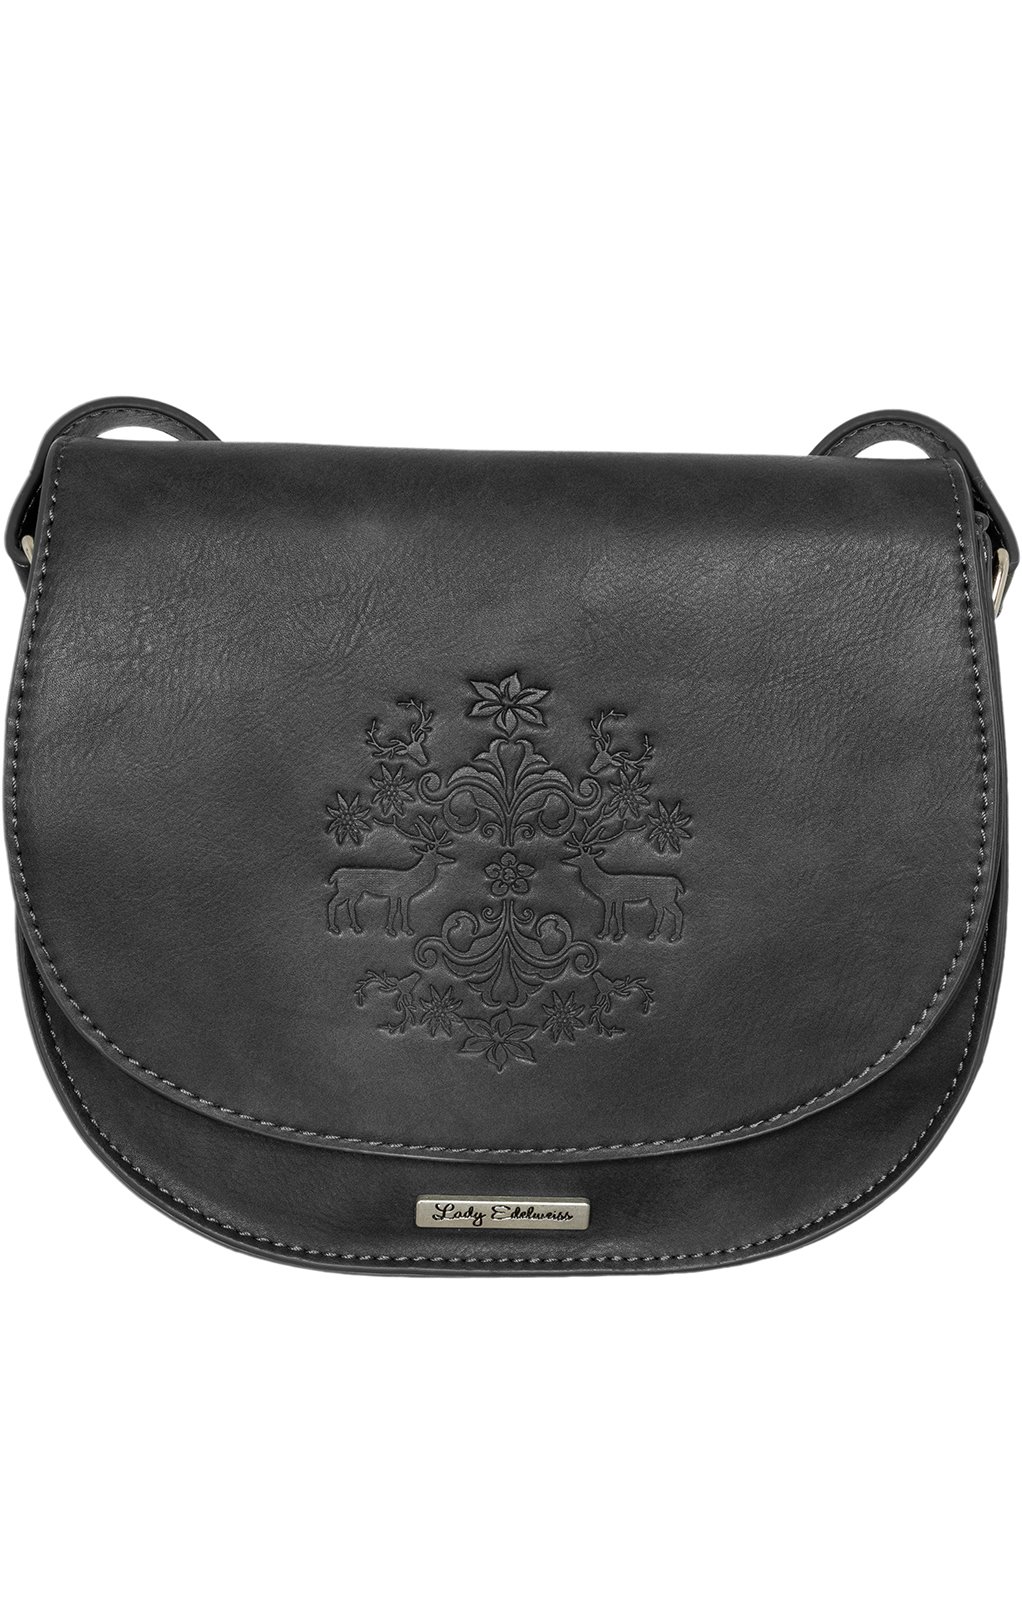 Trachtentasche 13102 schwarz von Lady Edelweiss